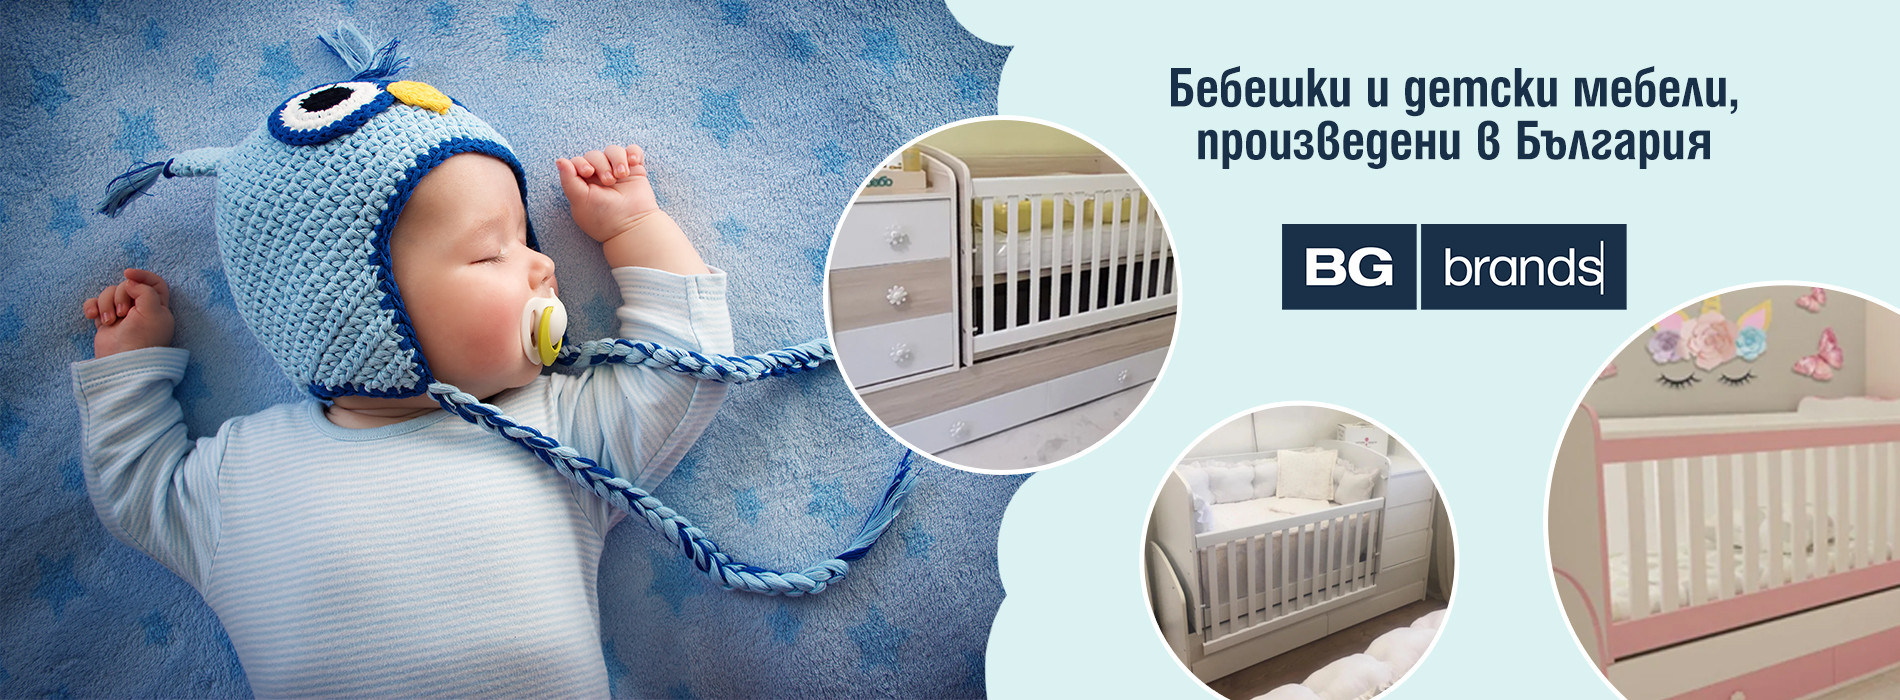 Бебешки и детски мебели, произведени в България | bgbrands.bg